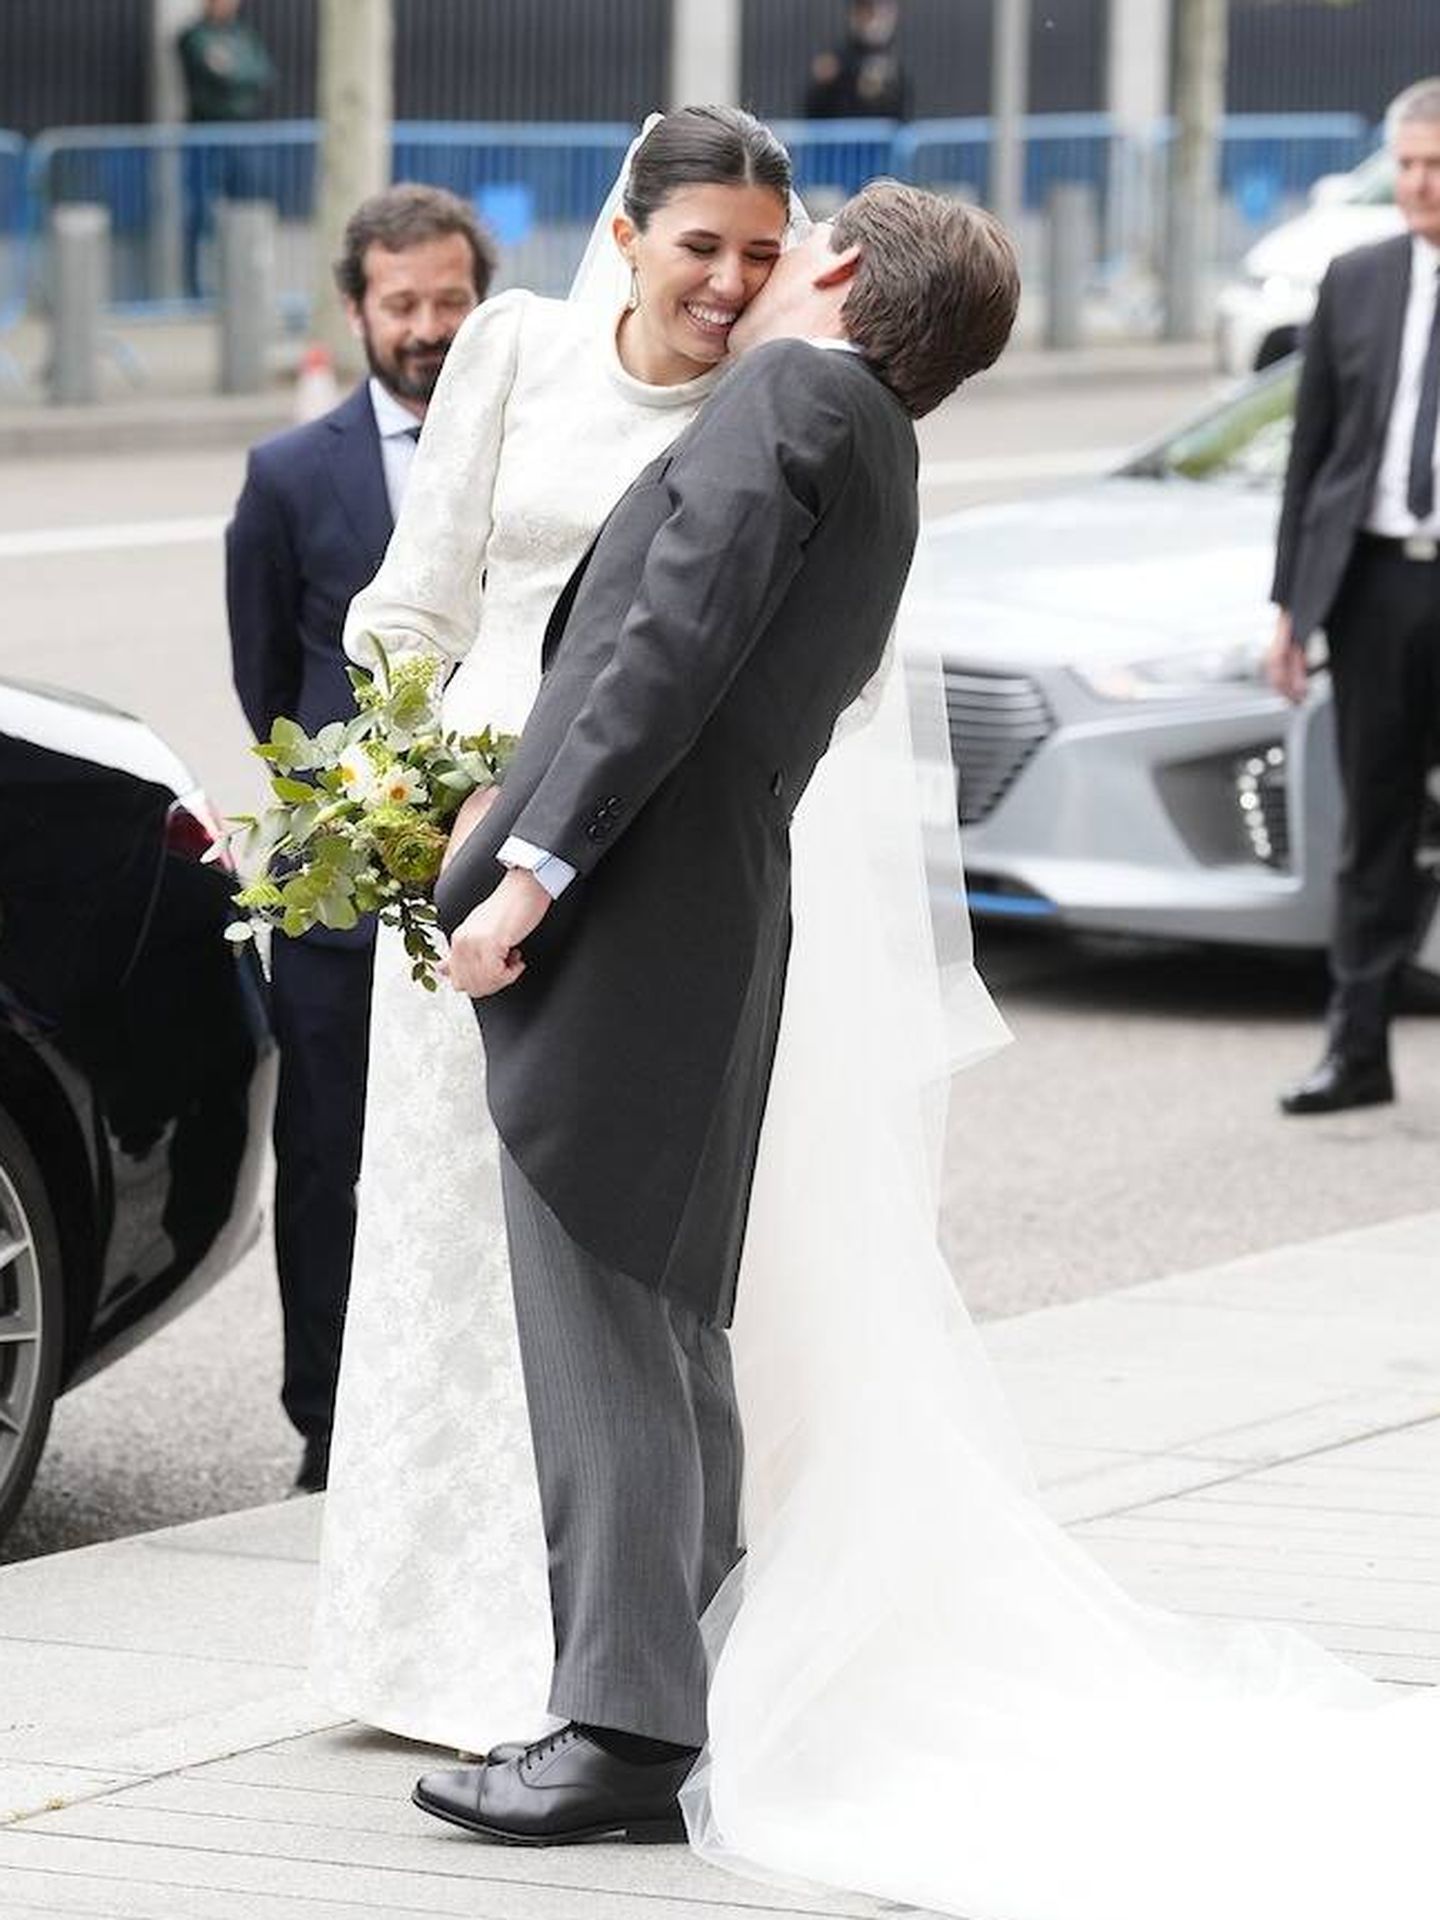 El tierno beso en la mejilla, tras la boda entre Martínez-Almeida y Teresa Urquijo. (LP)